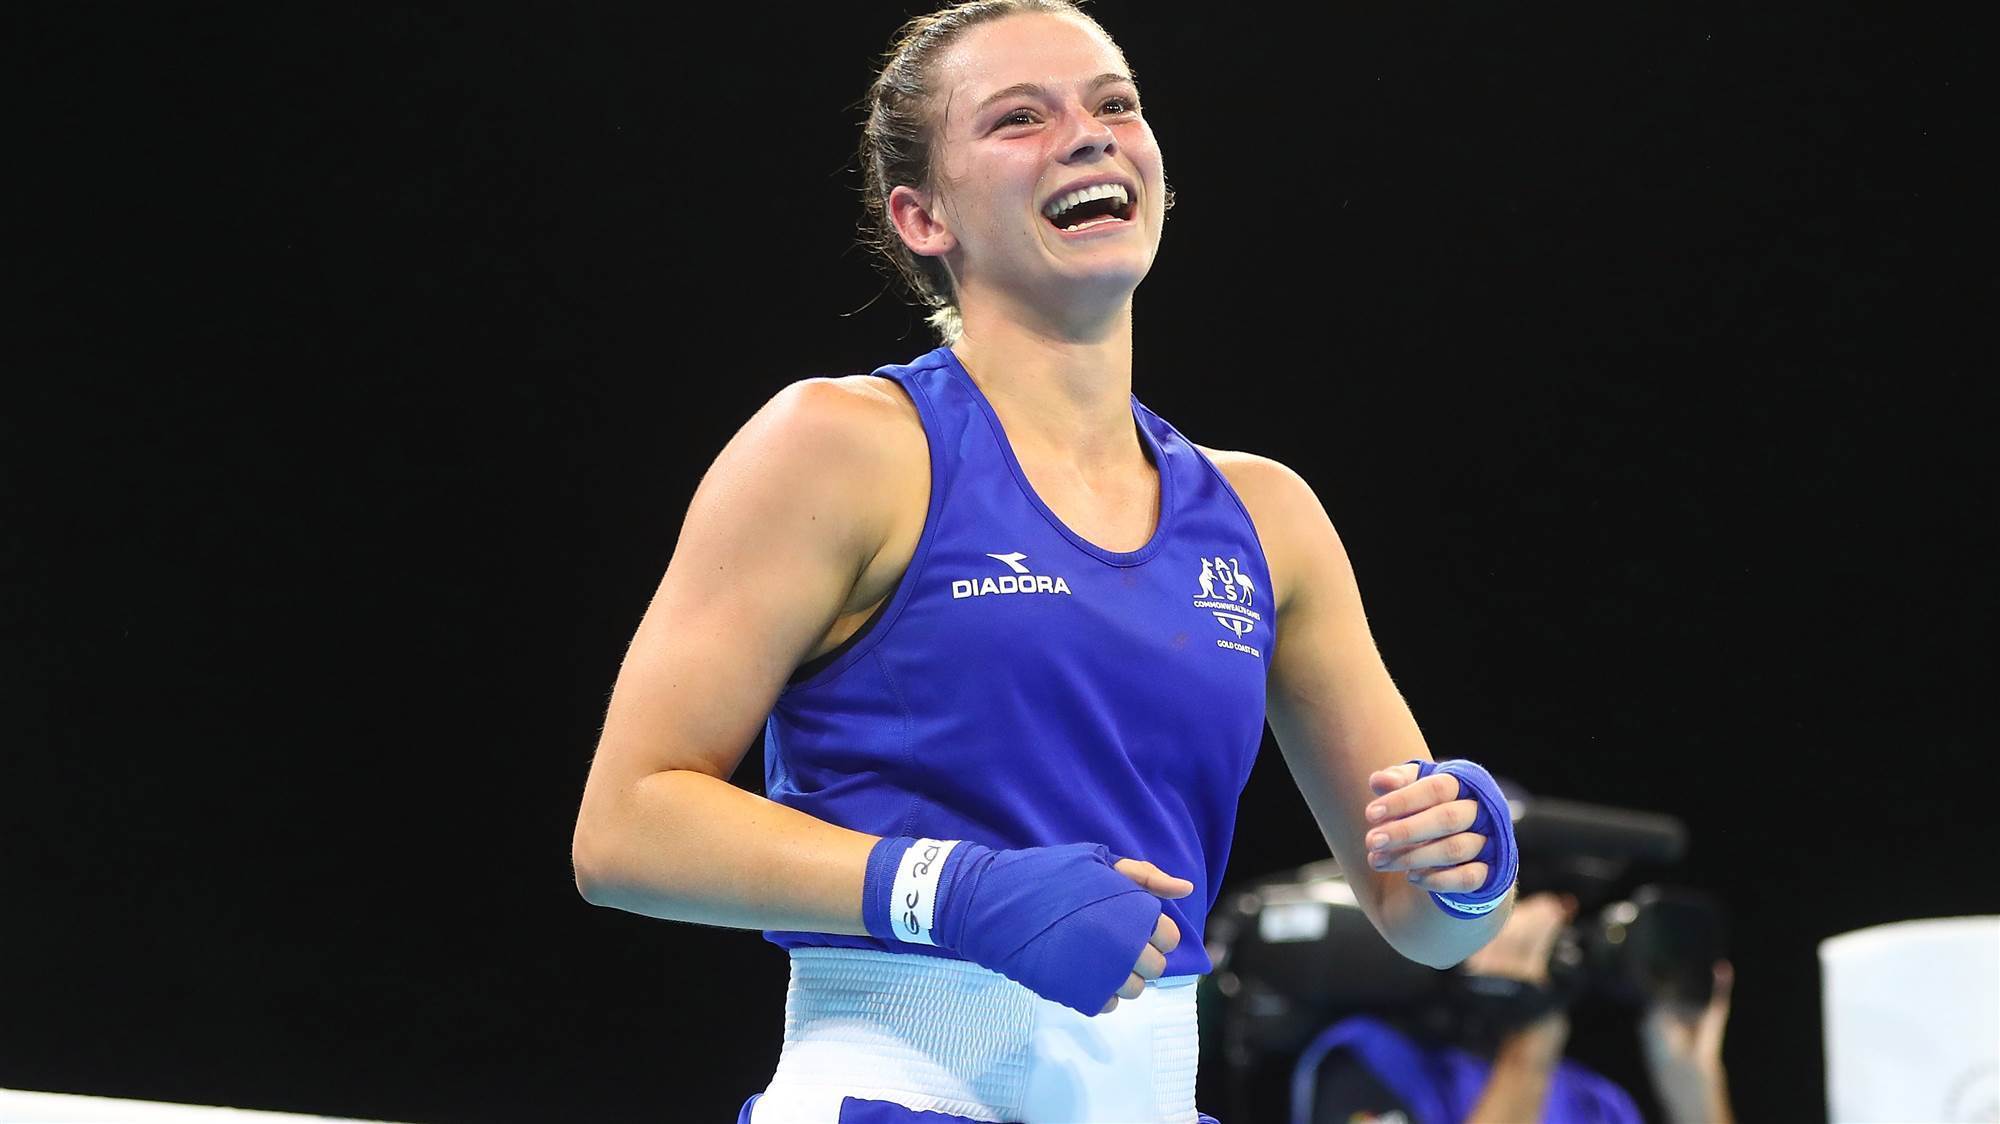 Australia's brightest female boxing hope skye nicolson wept tears of d...